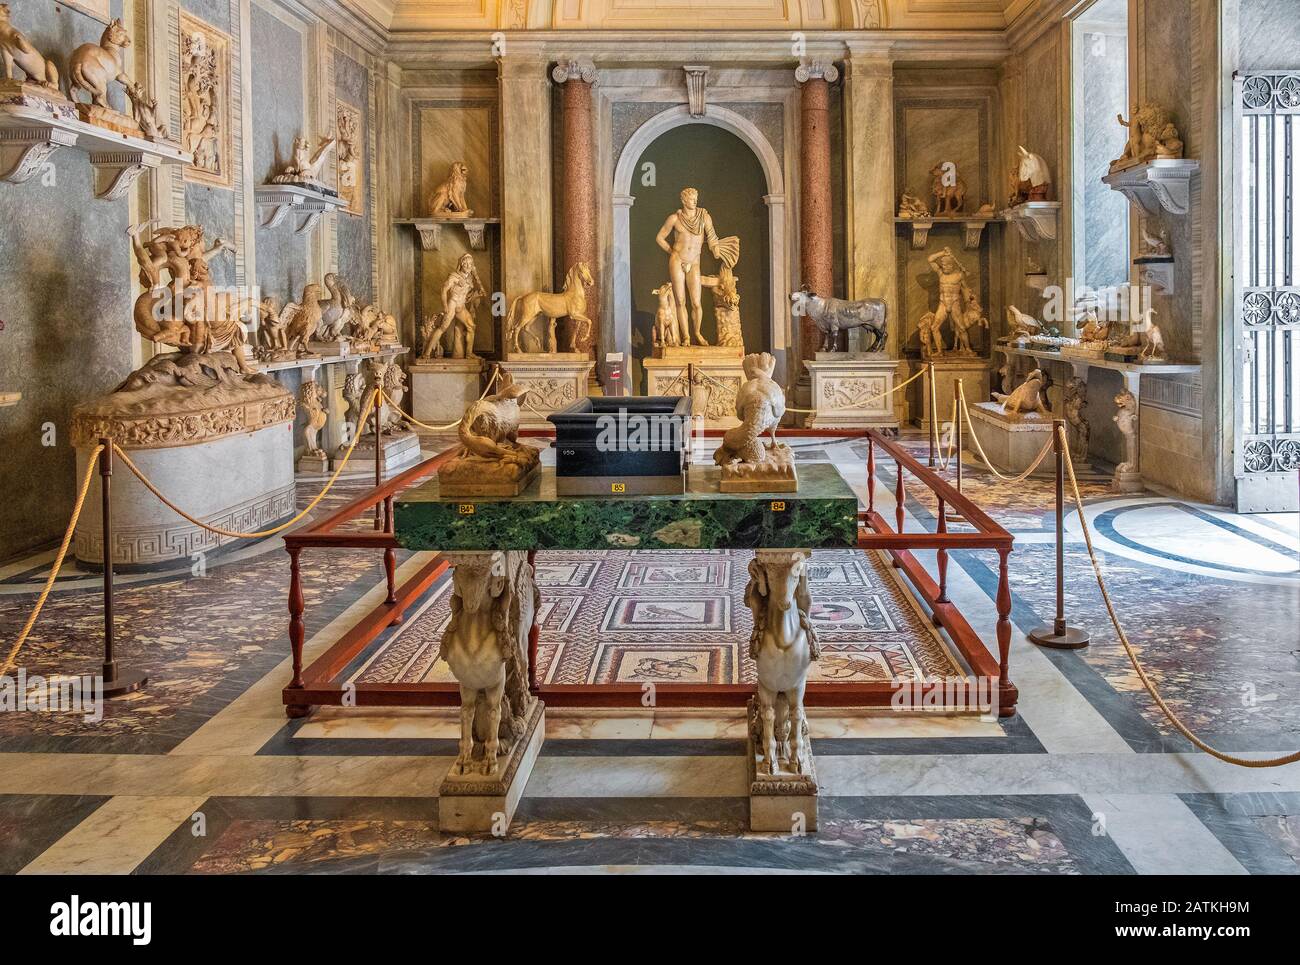 Rome, Vatican / Italie - 2019/06/15: Salle des animaux - Sala degli Animali - dans la partie Pio-Clementino des musées du Vatican - Musei Vaticani Banque D'Images